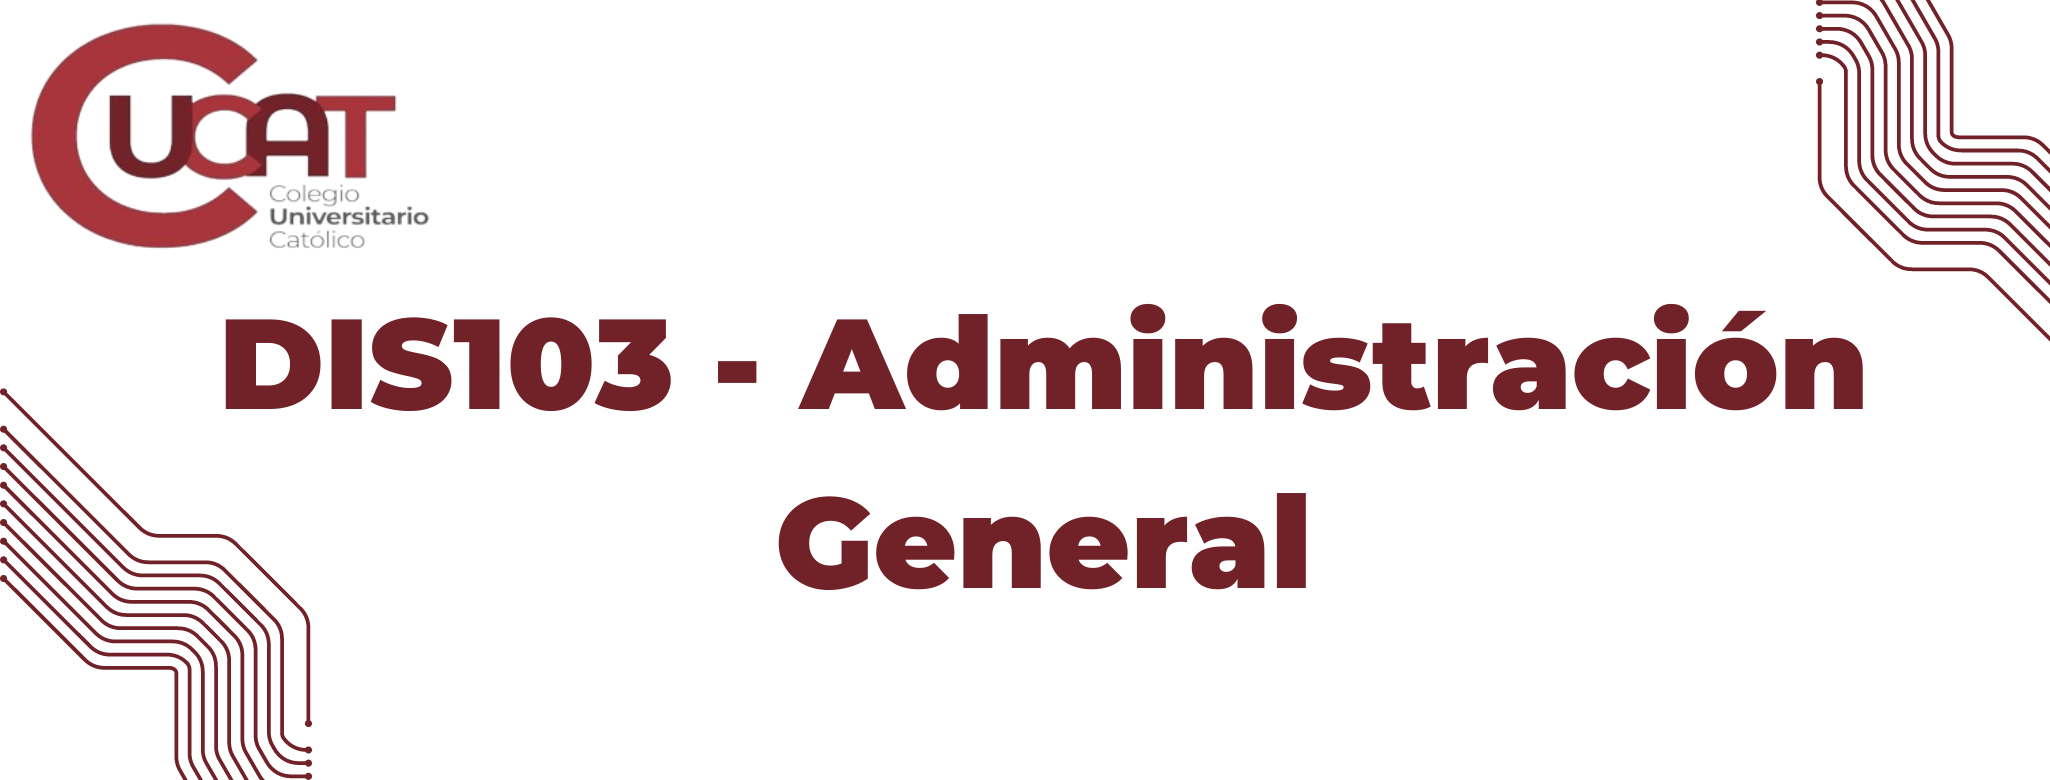 DIS103-Administración General